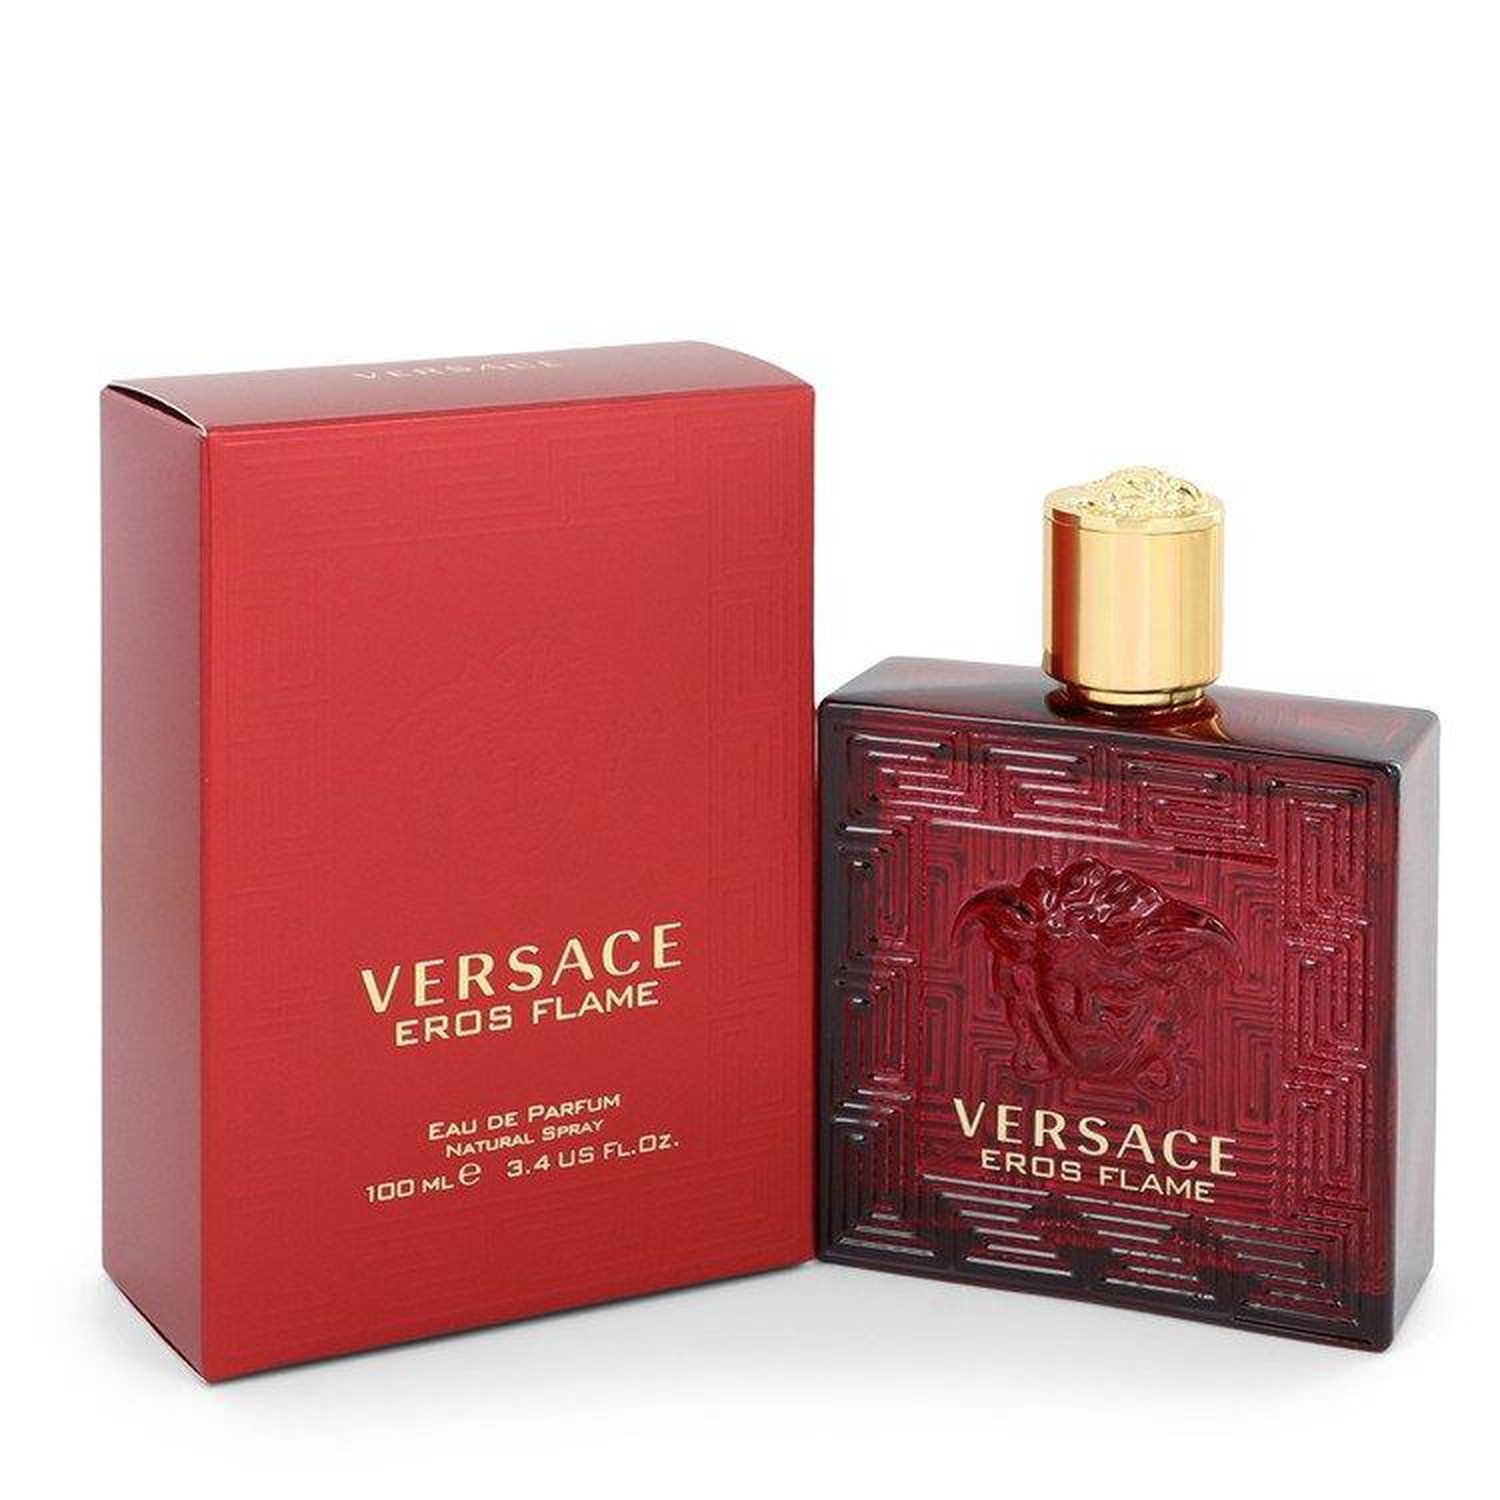 Versace Eros Flame Eau De Parfum for him 100ml